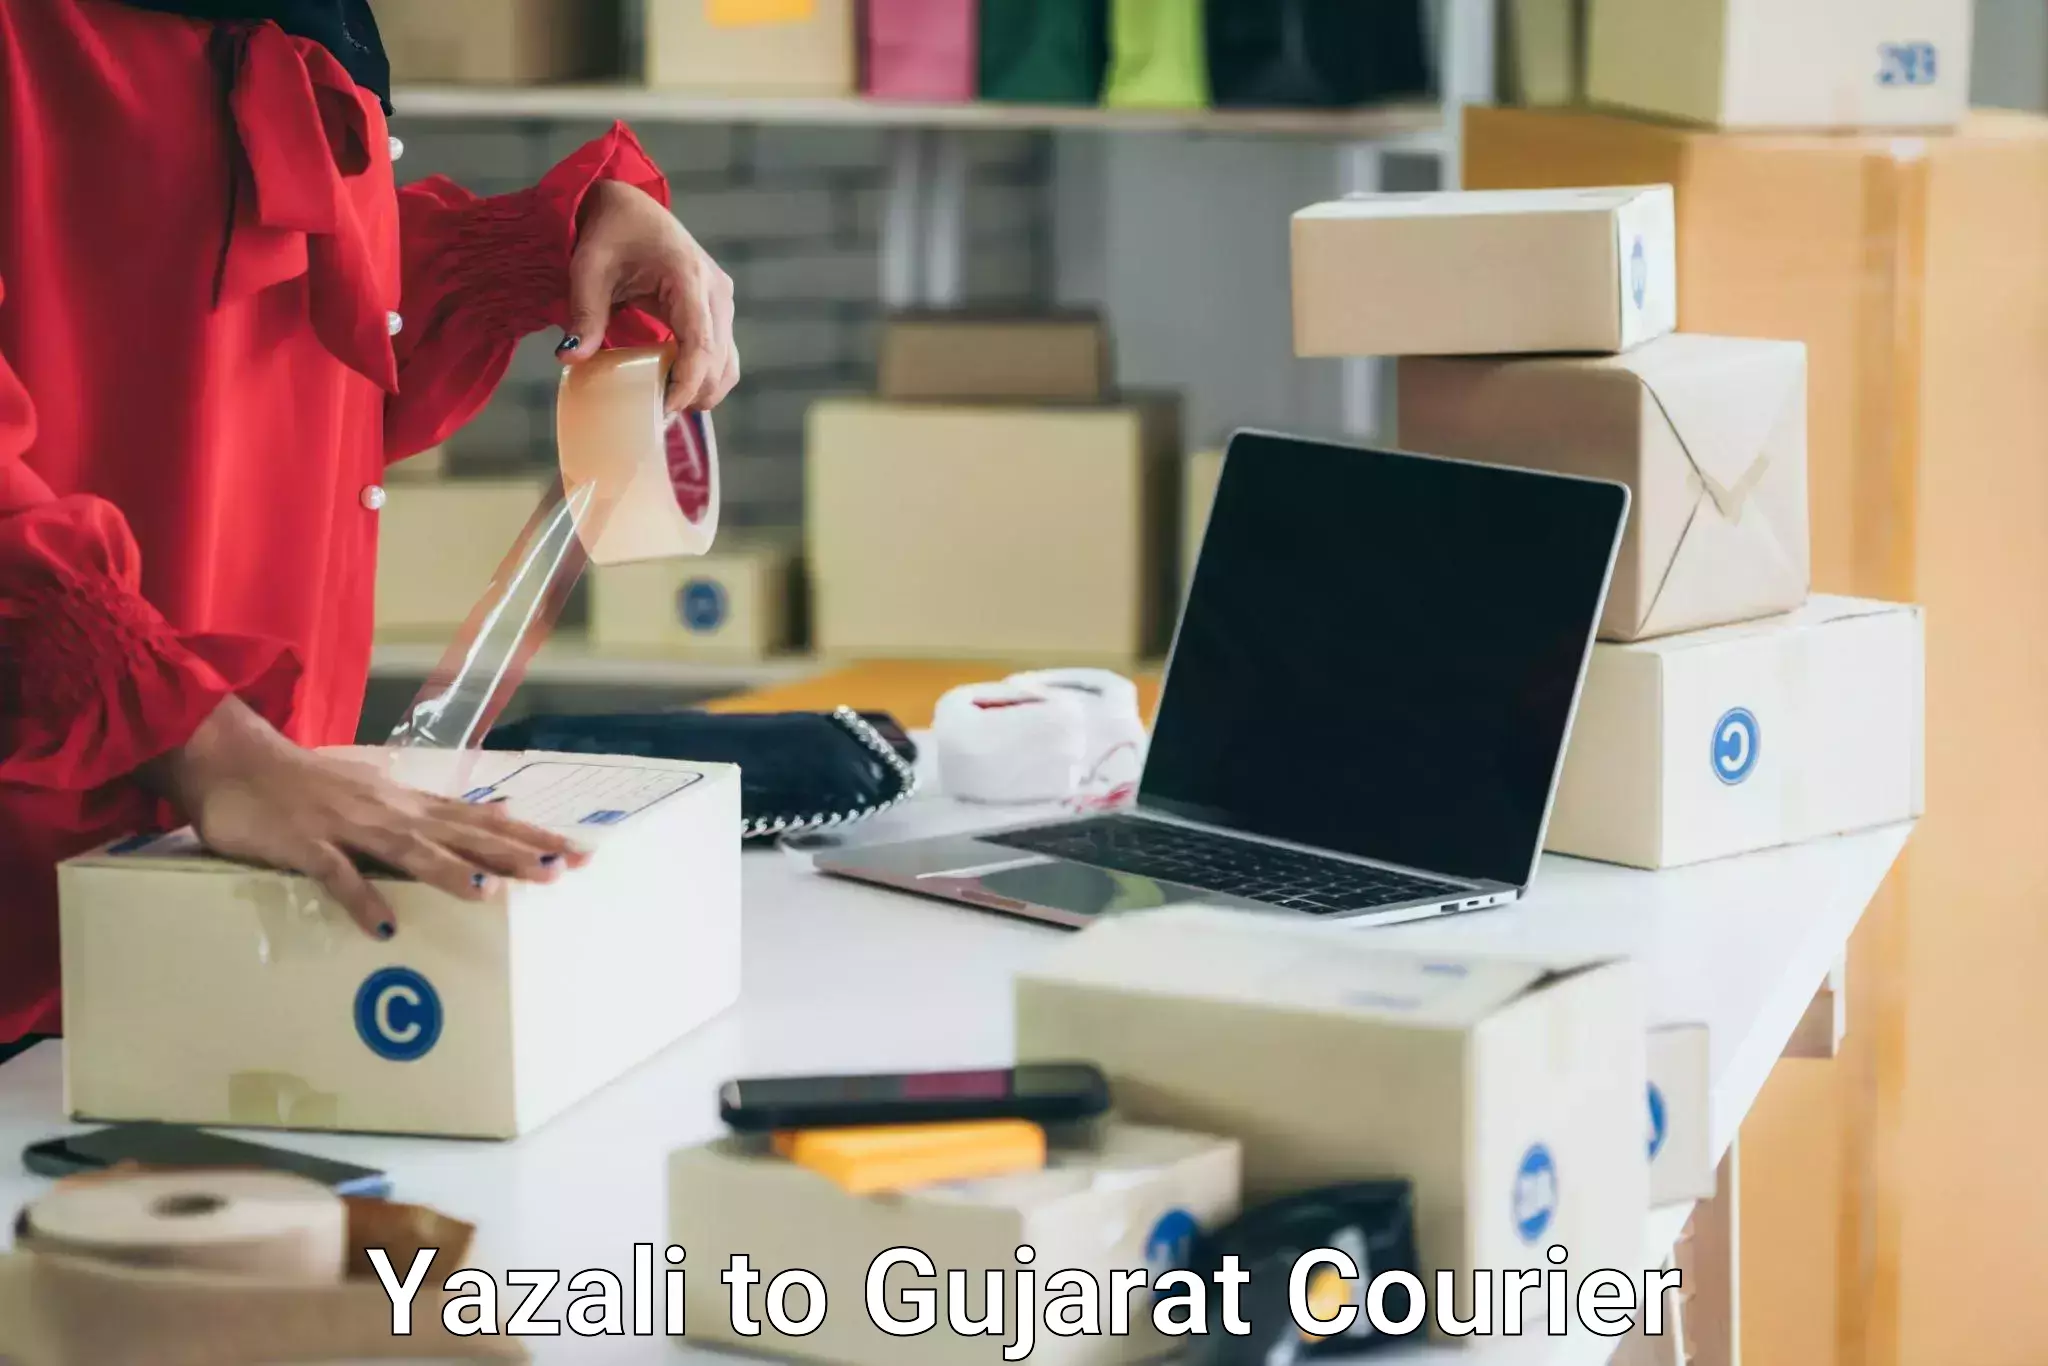 Furniture transport experts Yazali to Gujarat